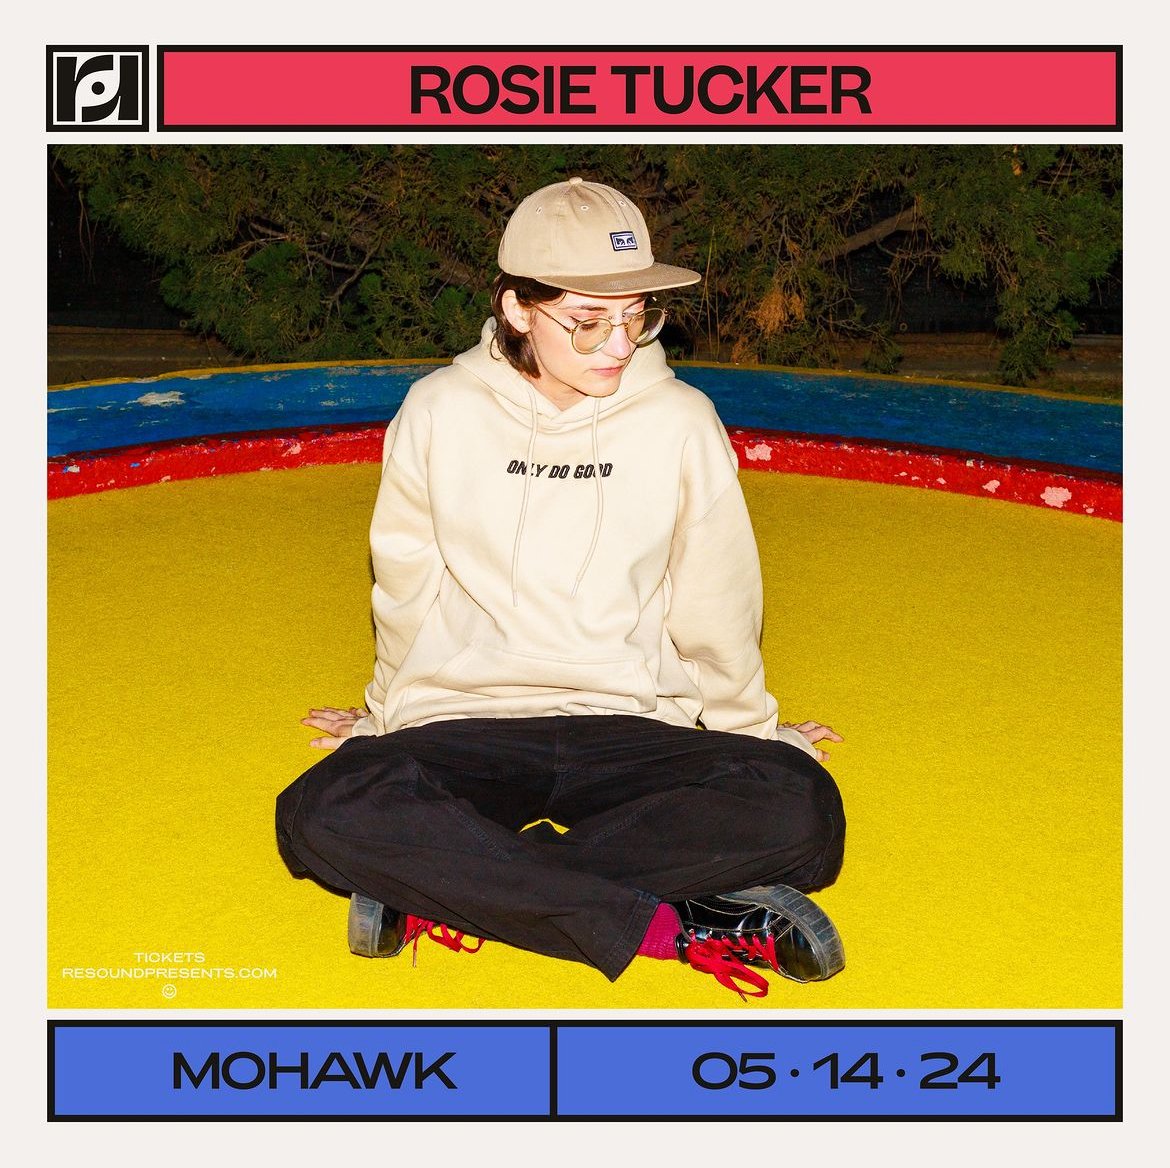 Rosie Tucker